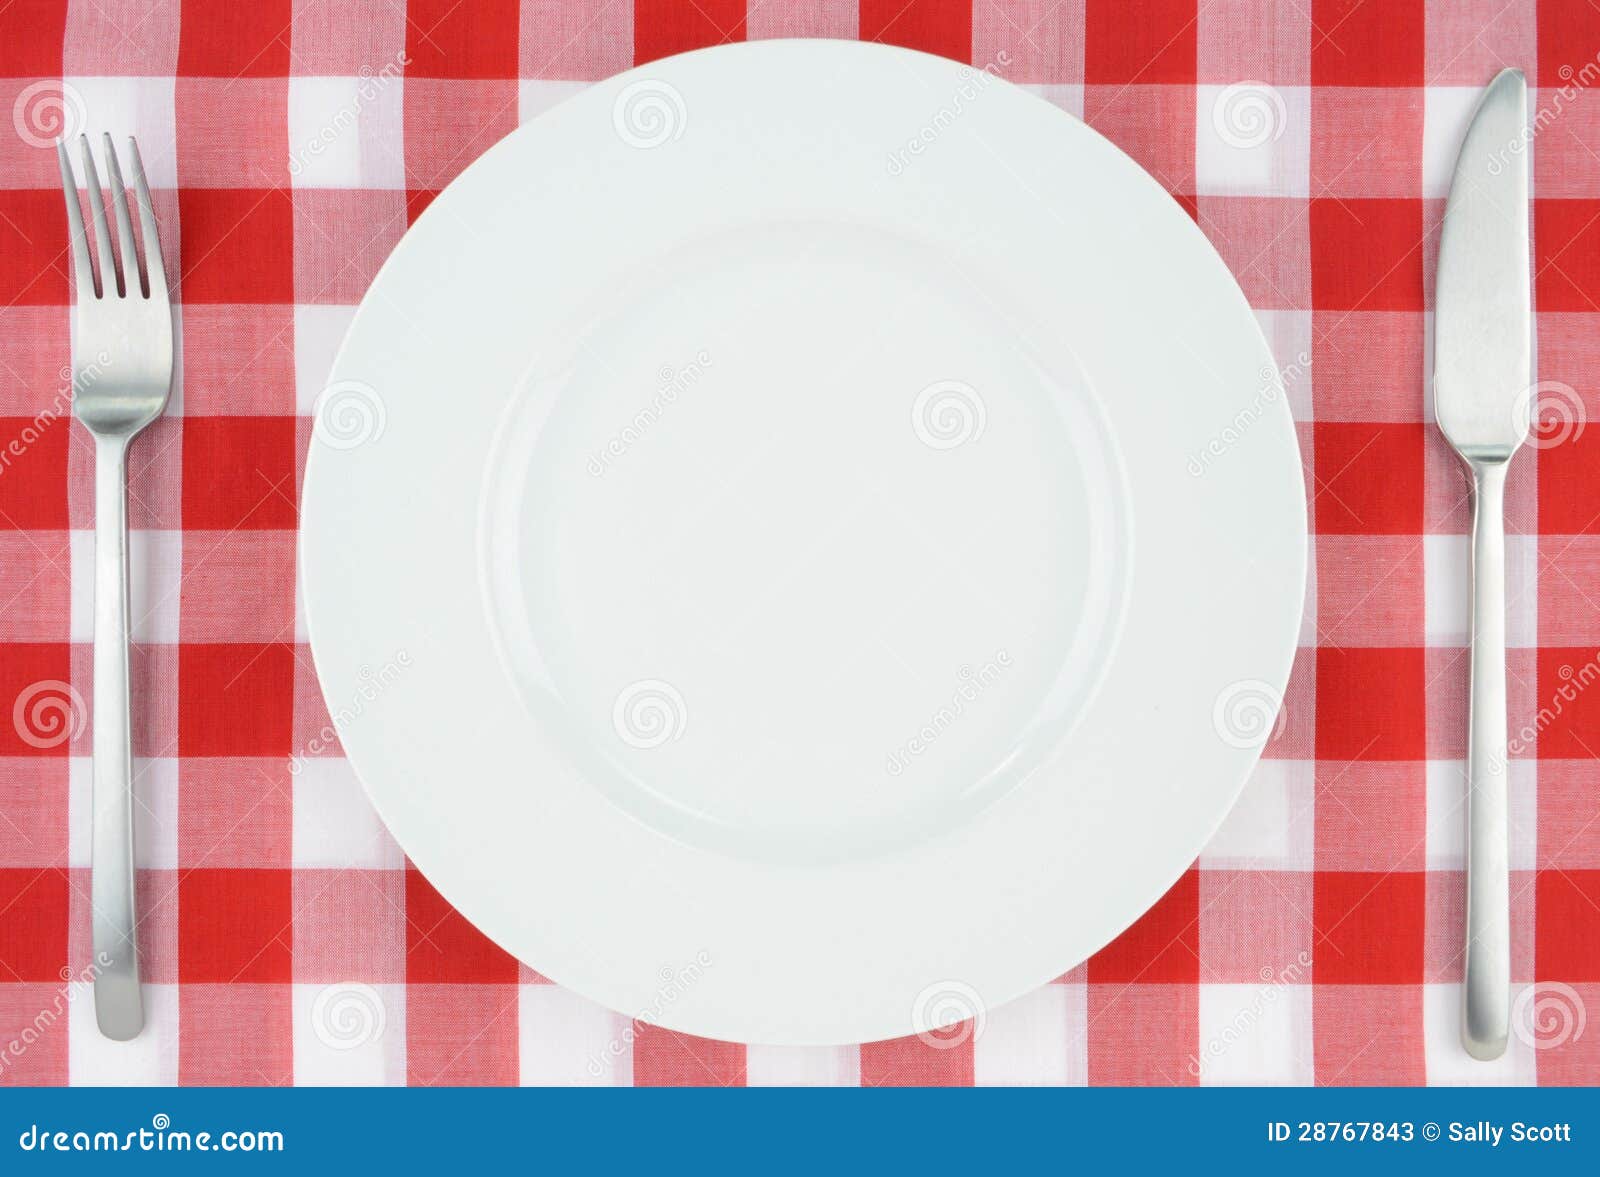 Bielu talerz na czerwonym i białym w kratkę płótnie. Bielu talerz z nożem i rozwidlenie na w kratkę płótnie czerwonym i białym